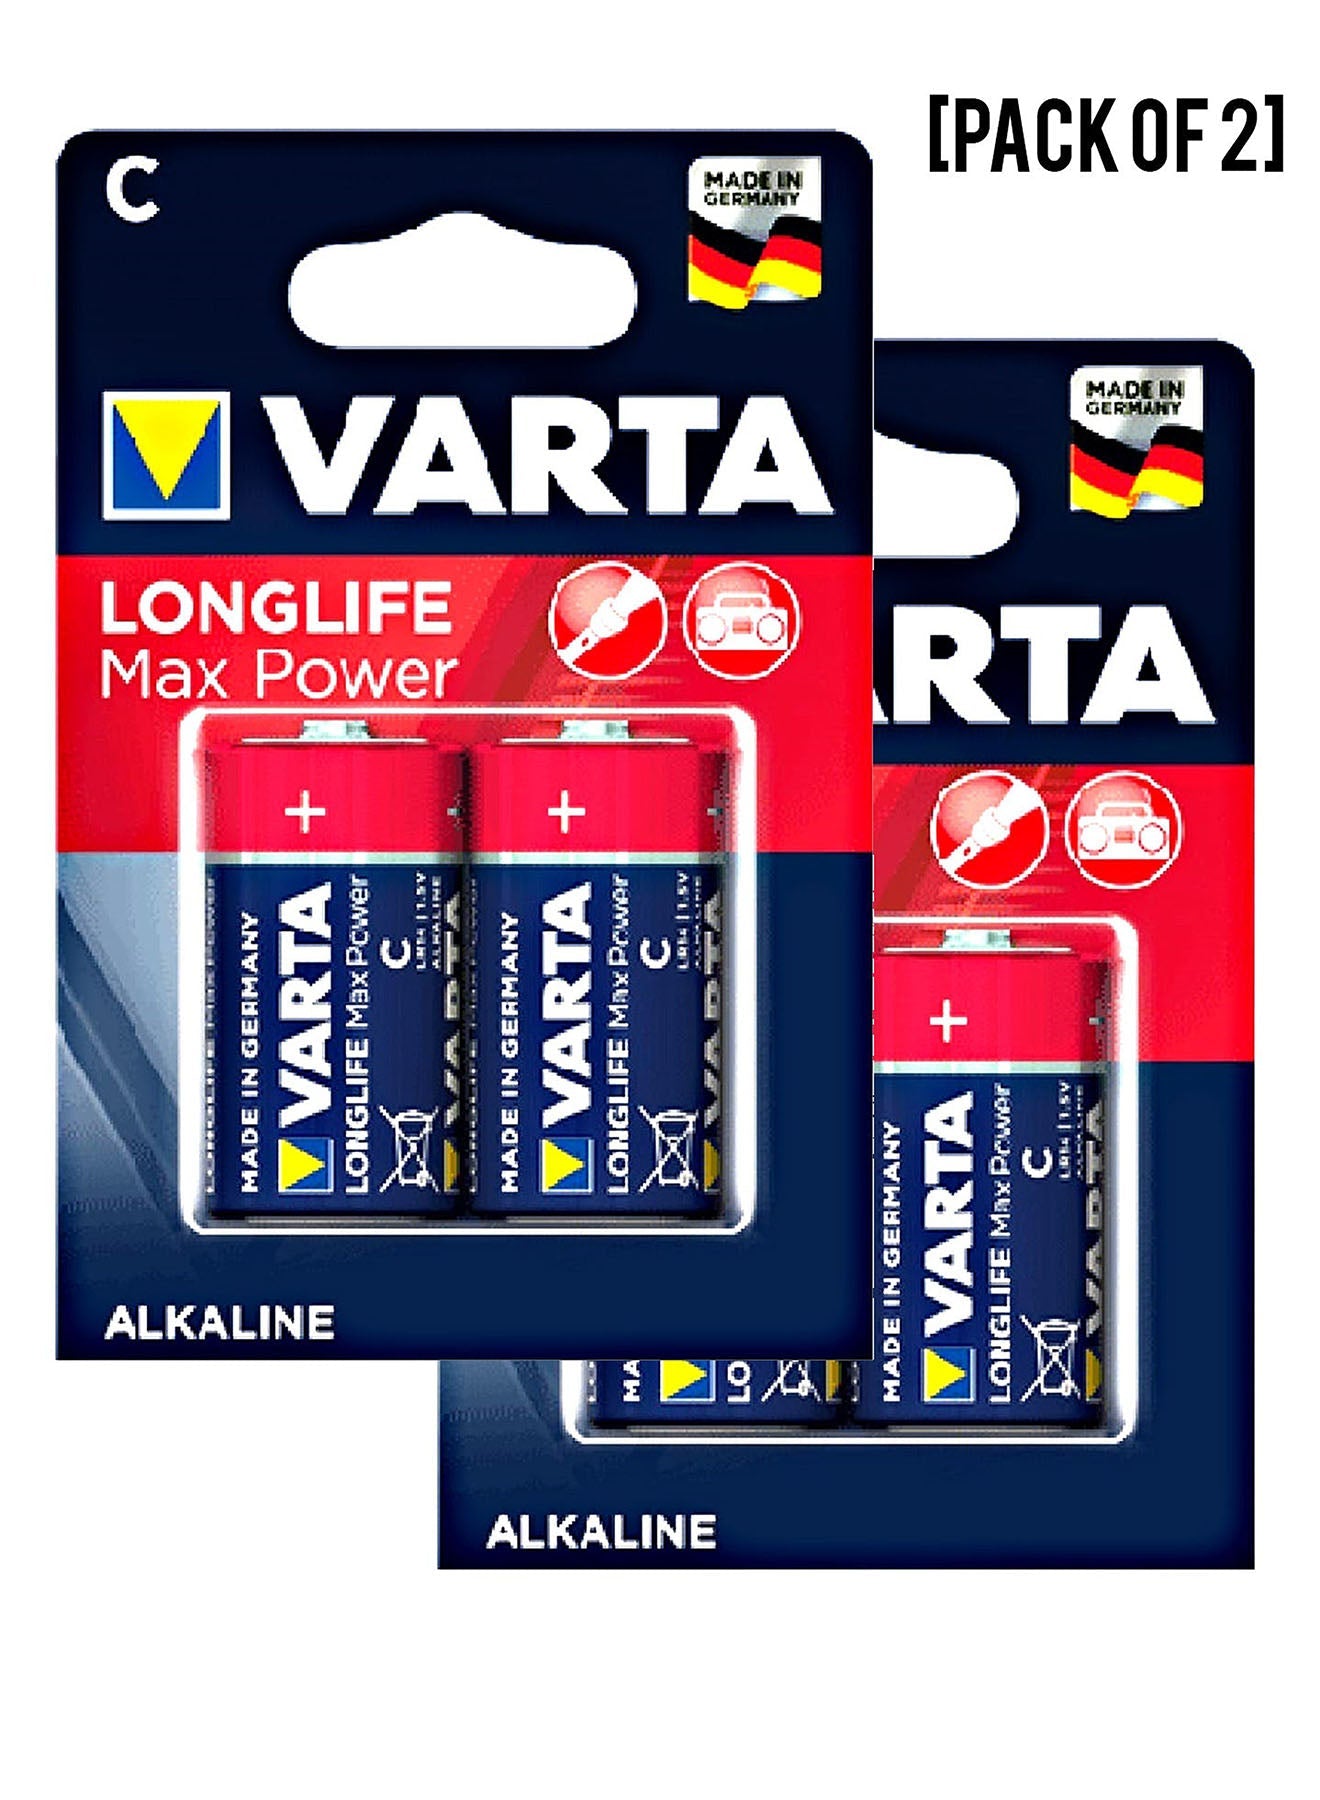 Varta Long Life MaxPower LR14 C Alkaline Battery 2Units Value Pack of 2 